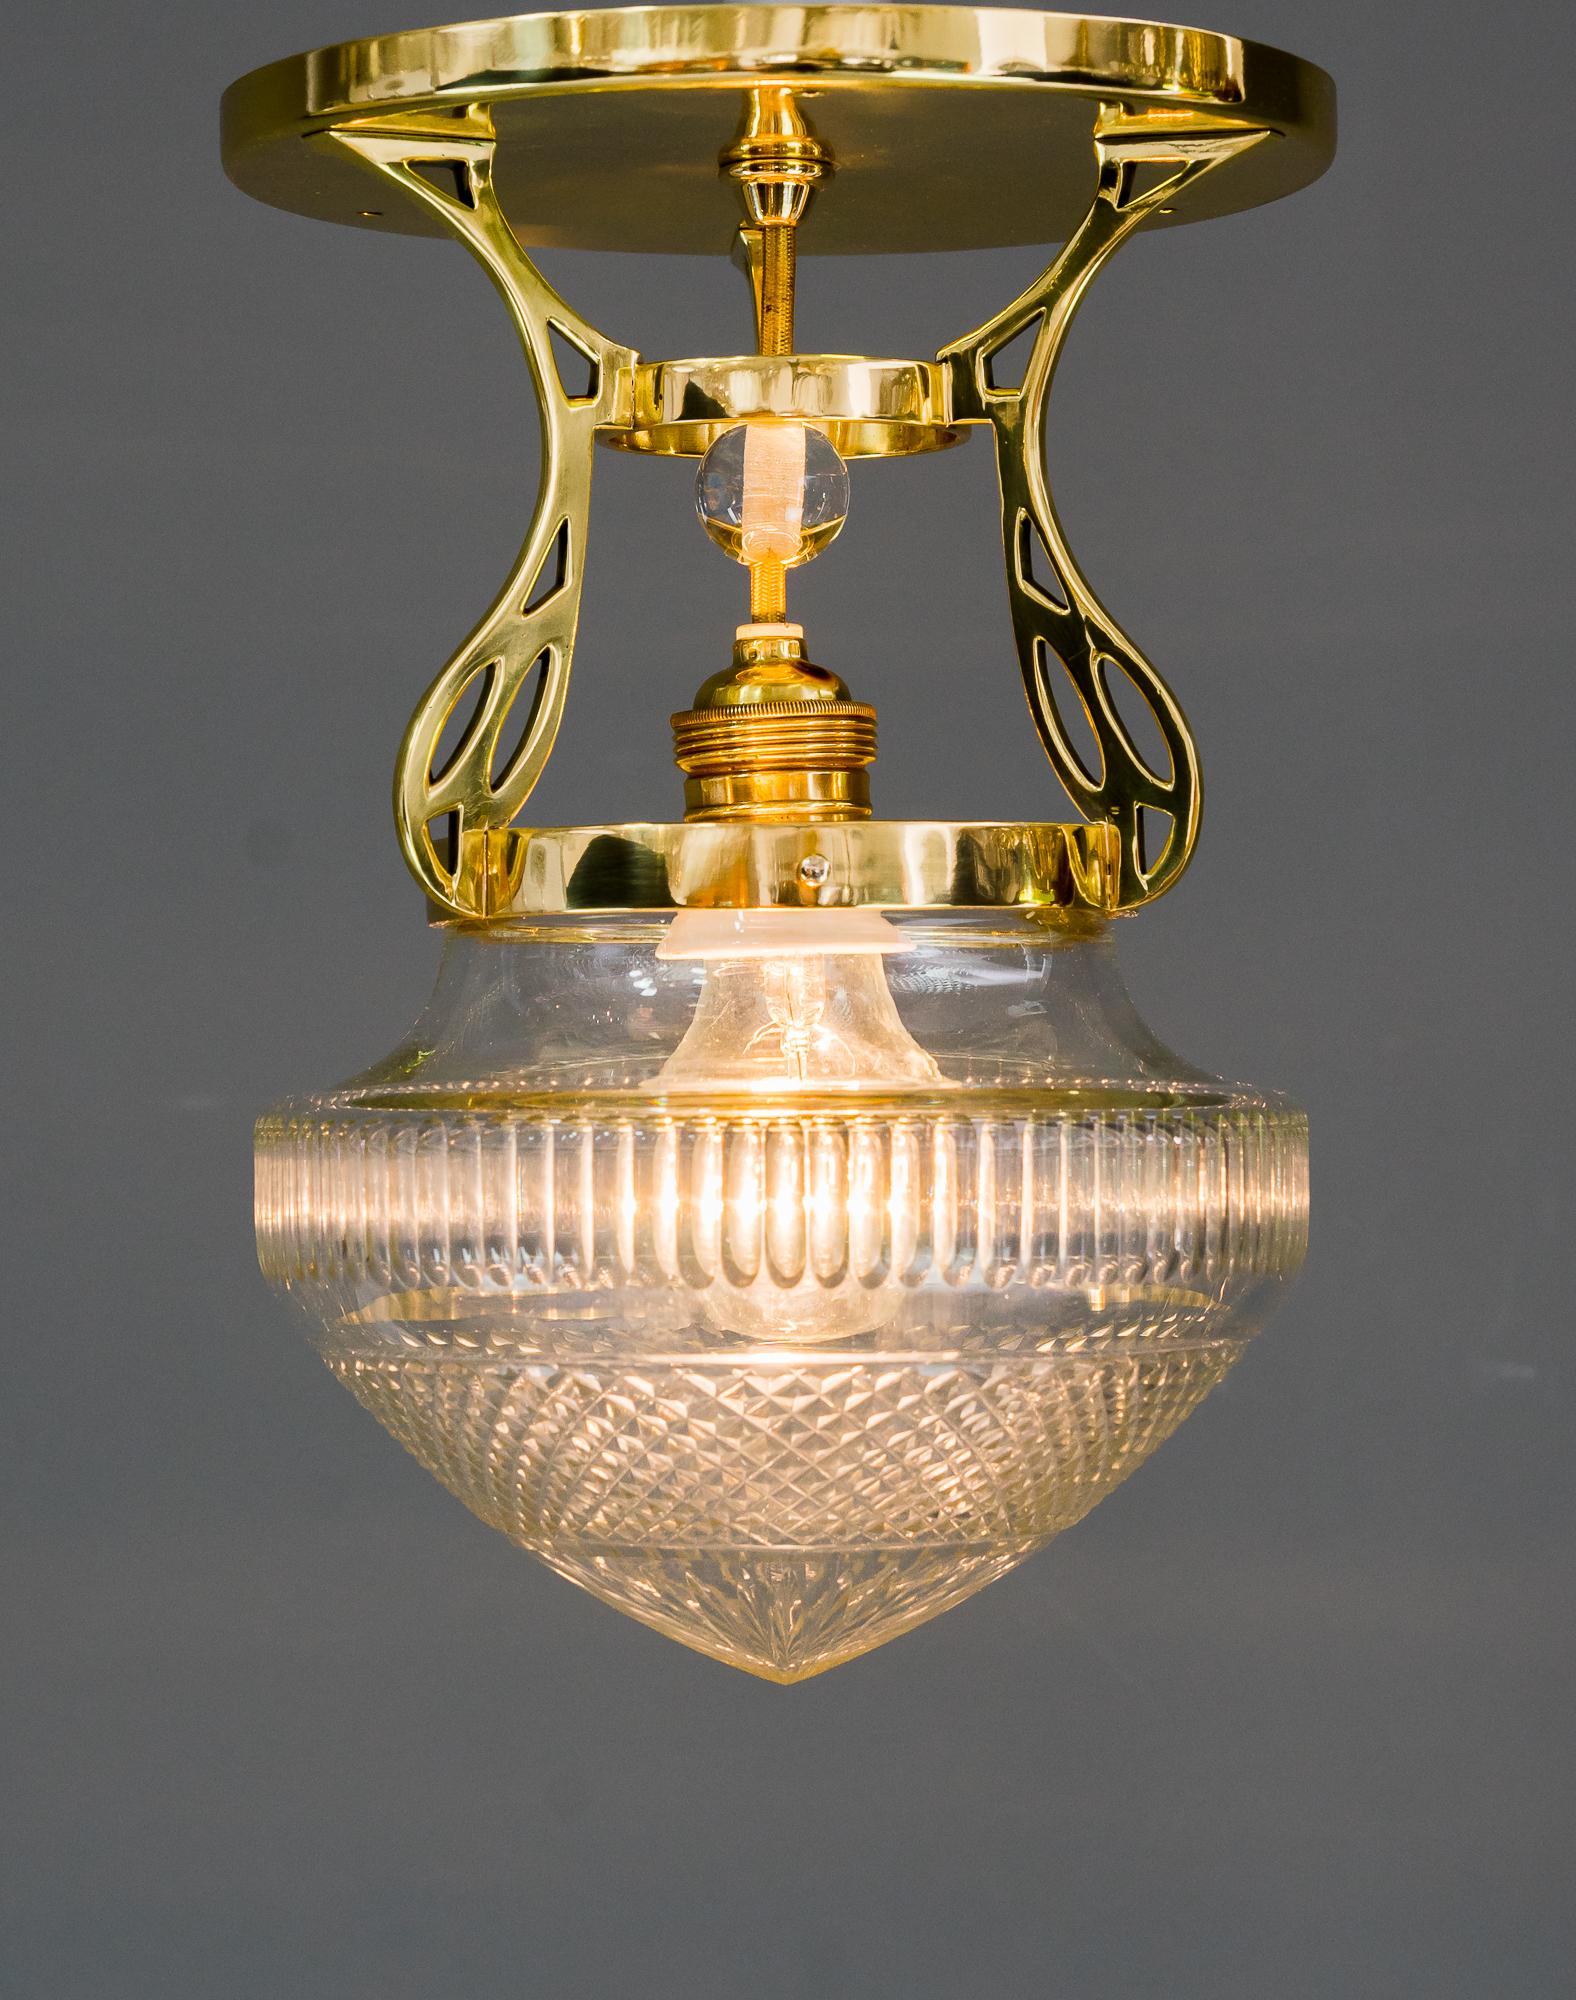 Brass Art Deco Ceiling Lamp, Vienna Around 1920s